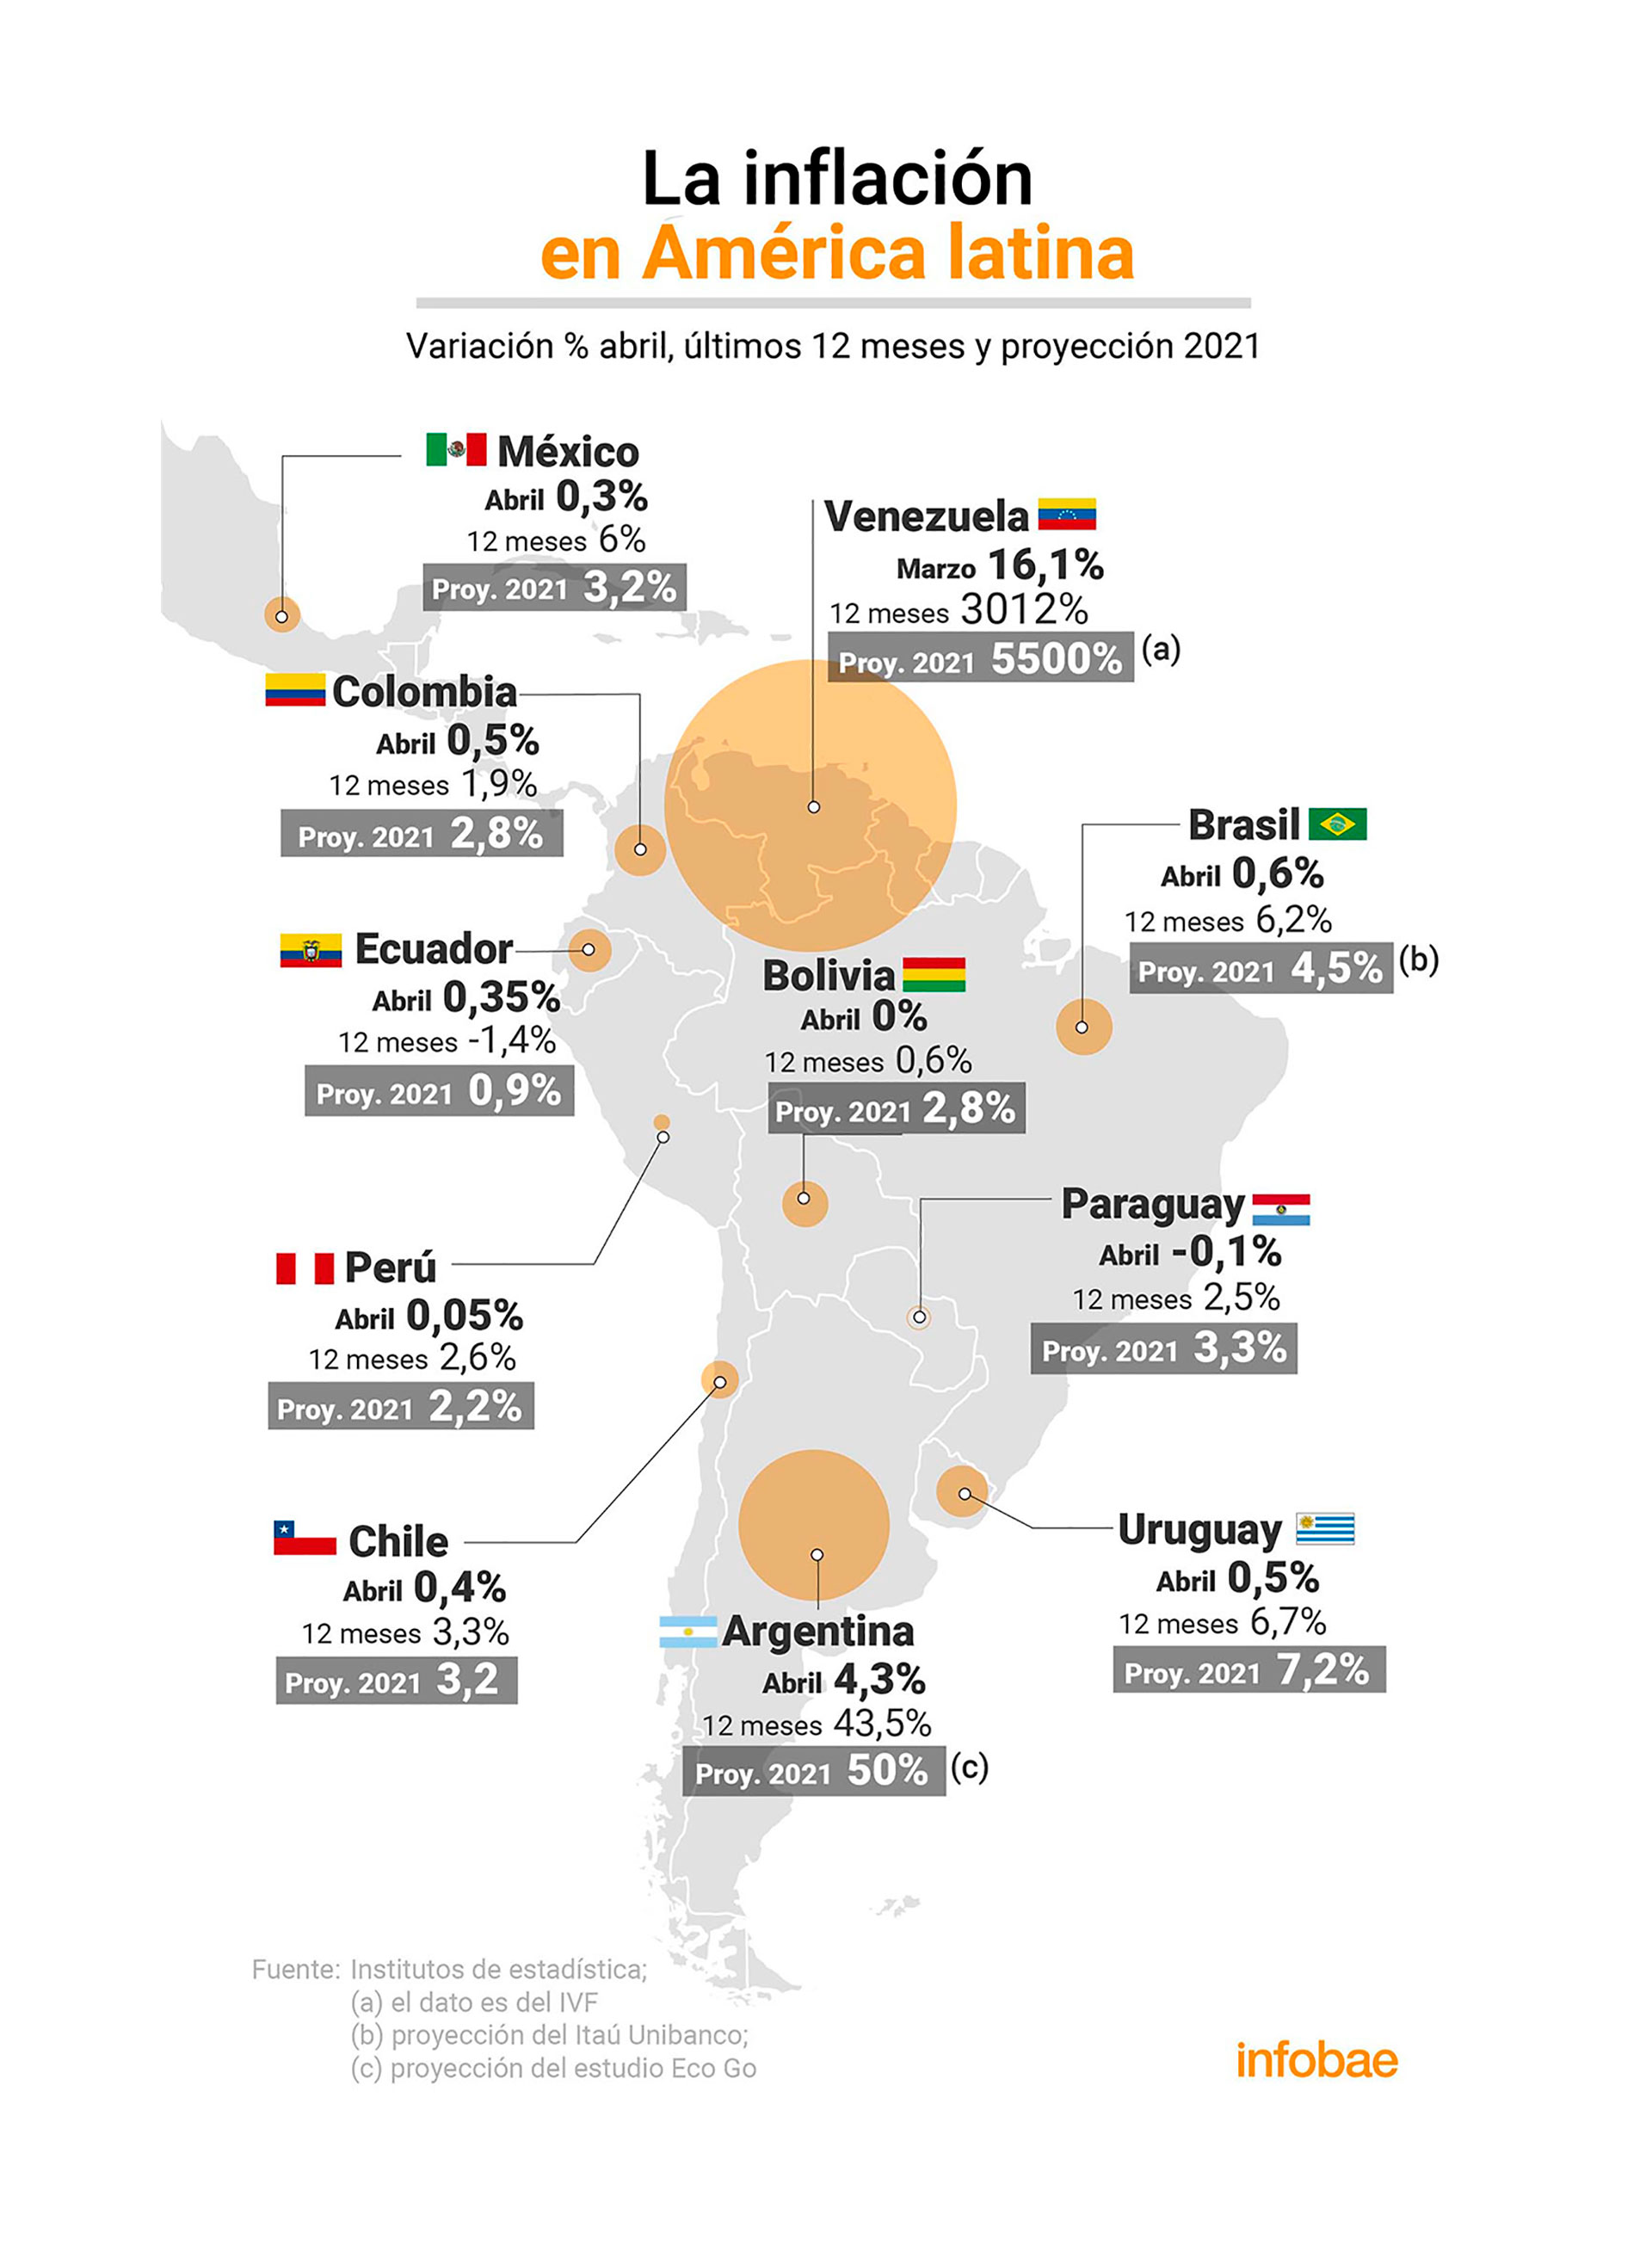 La inflación de abril en América latina
Infografía: Marcelo Regalado